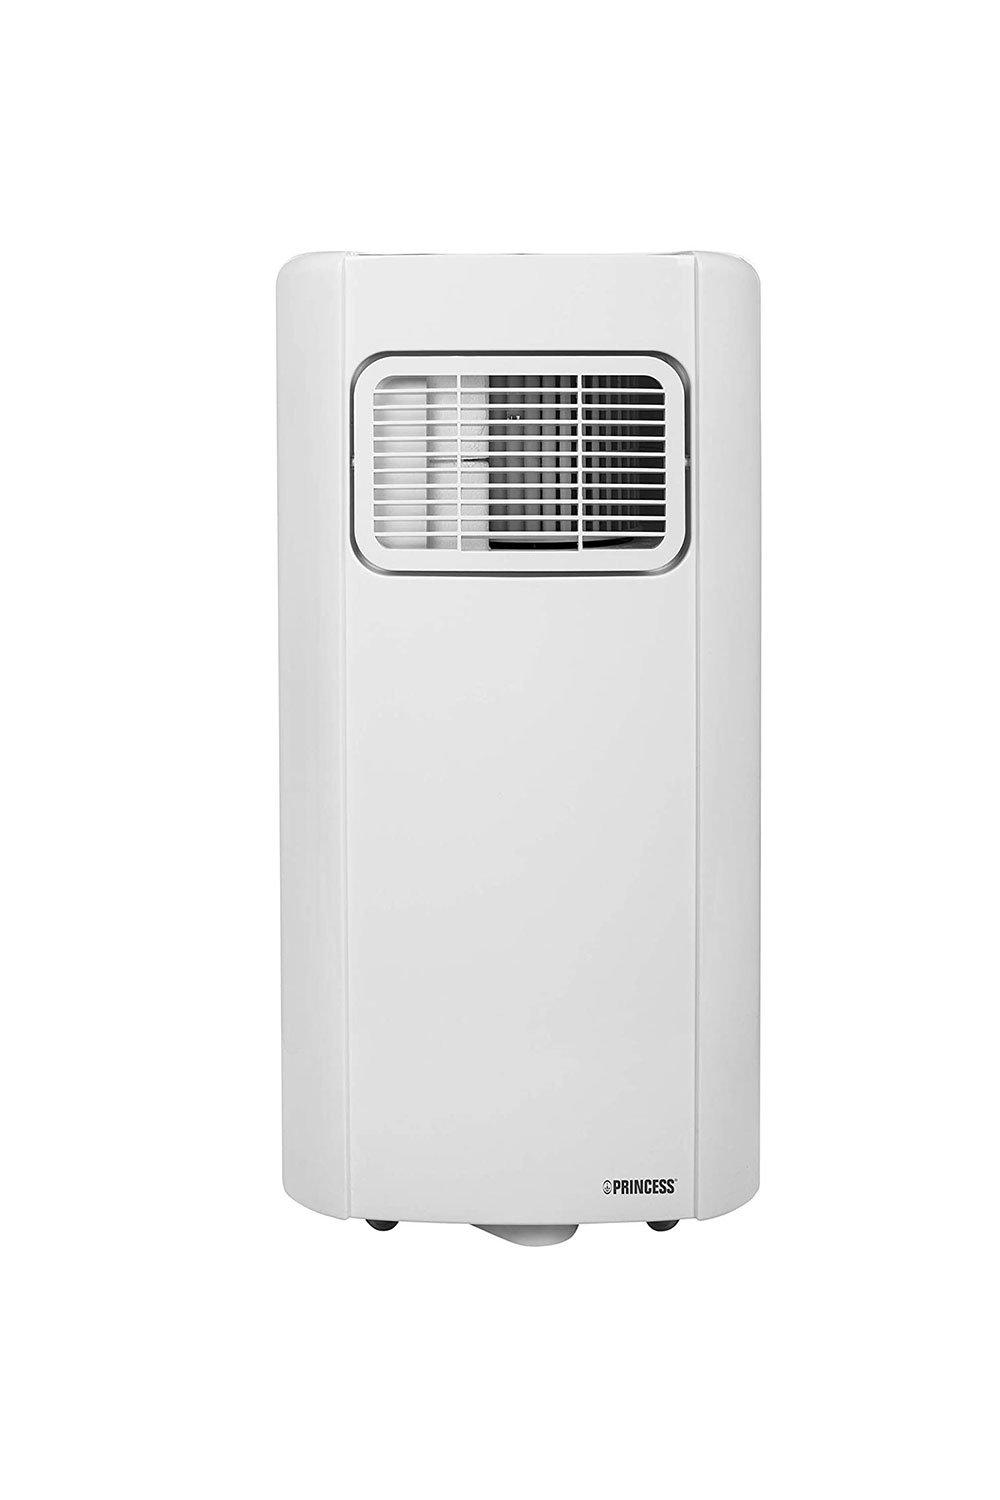 PRINCESS 352101 Portable Air Conditioner